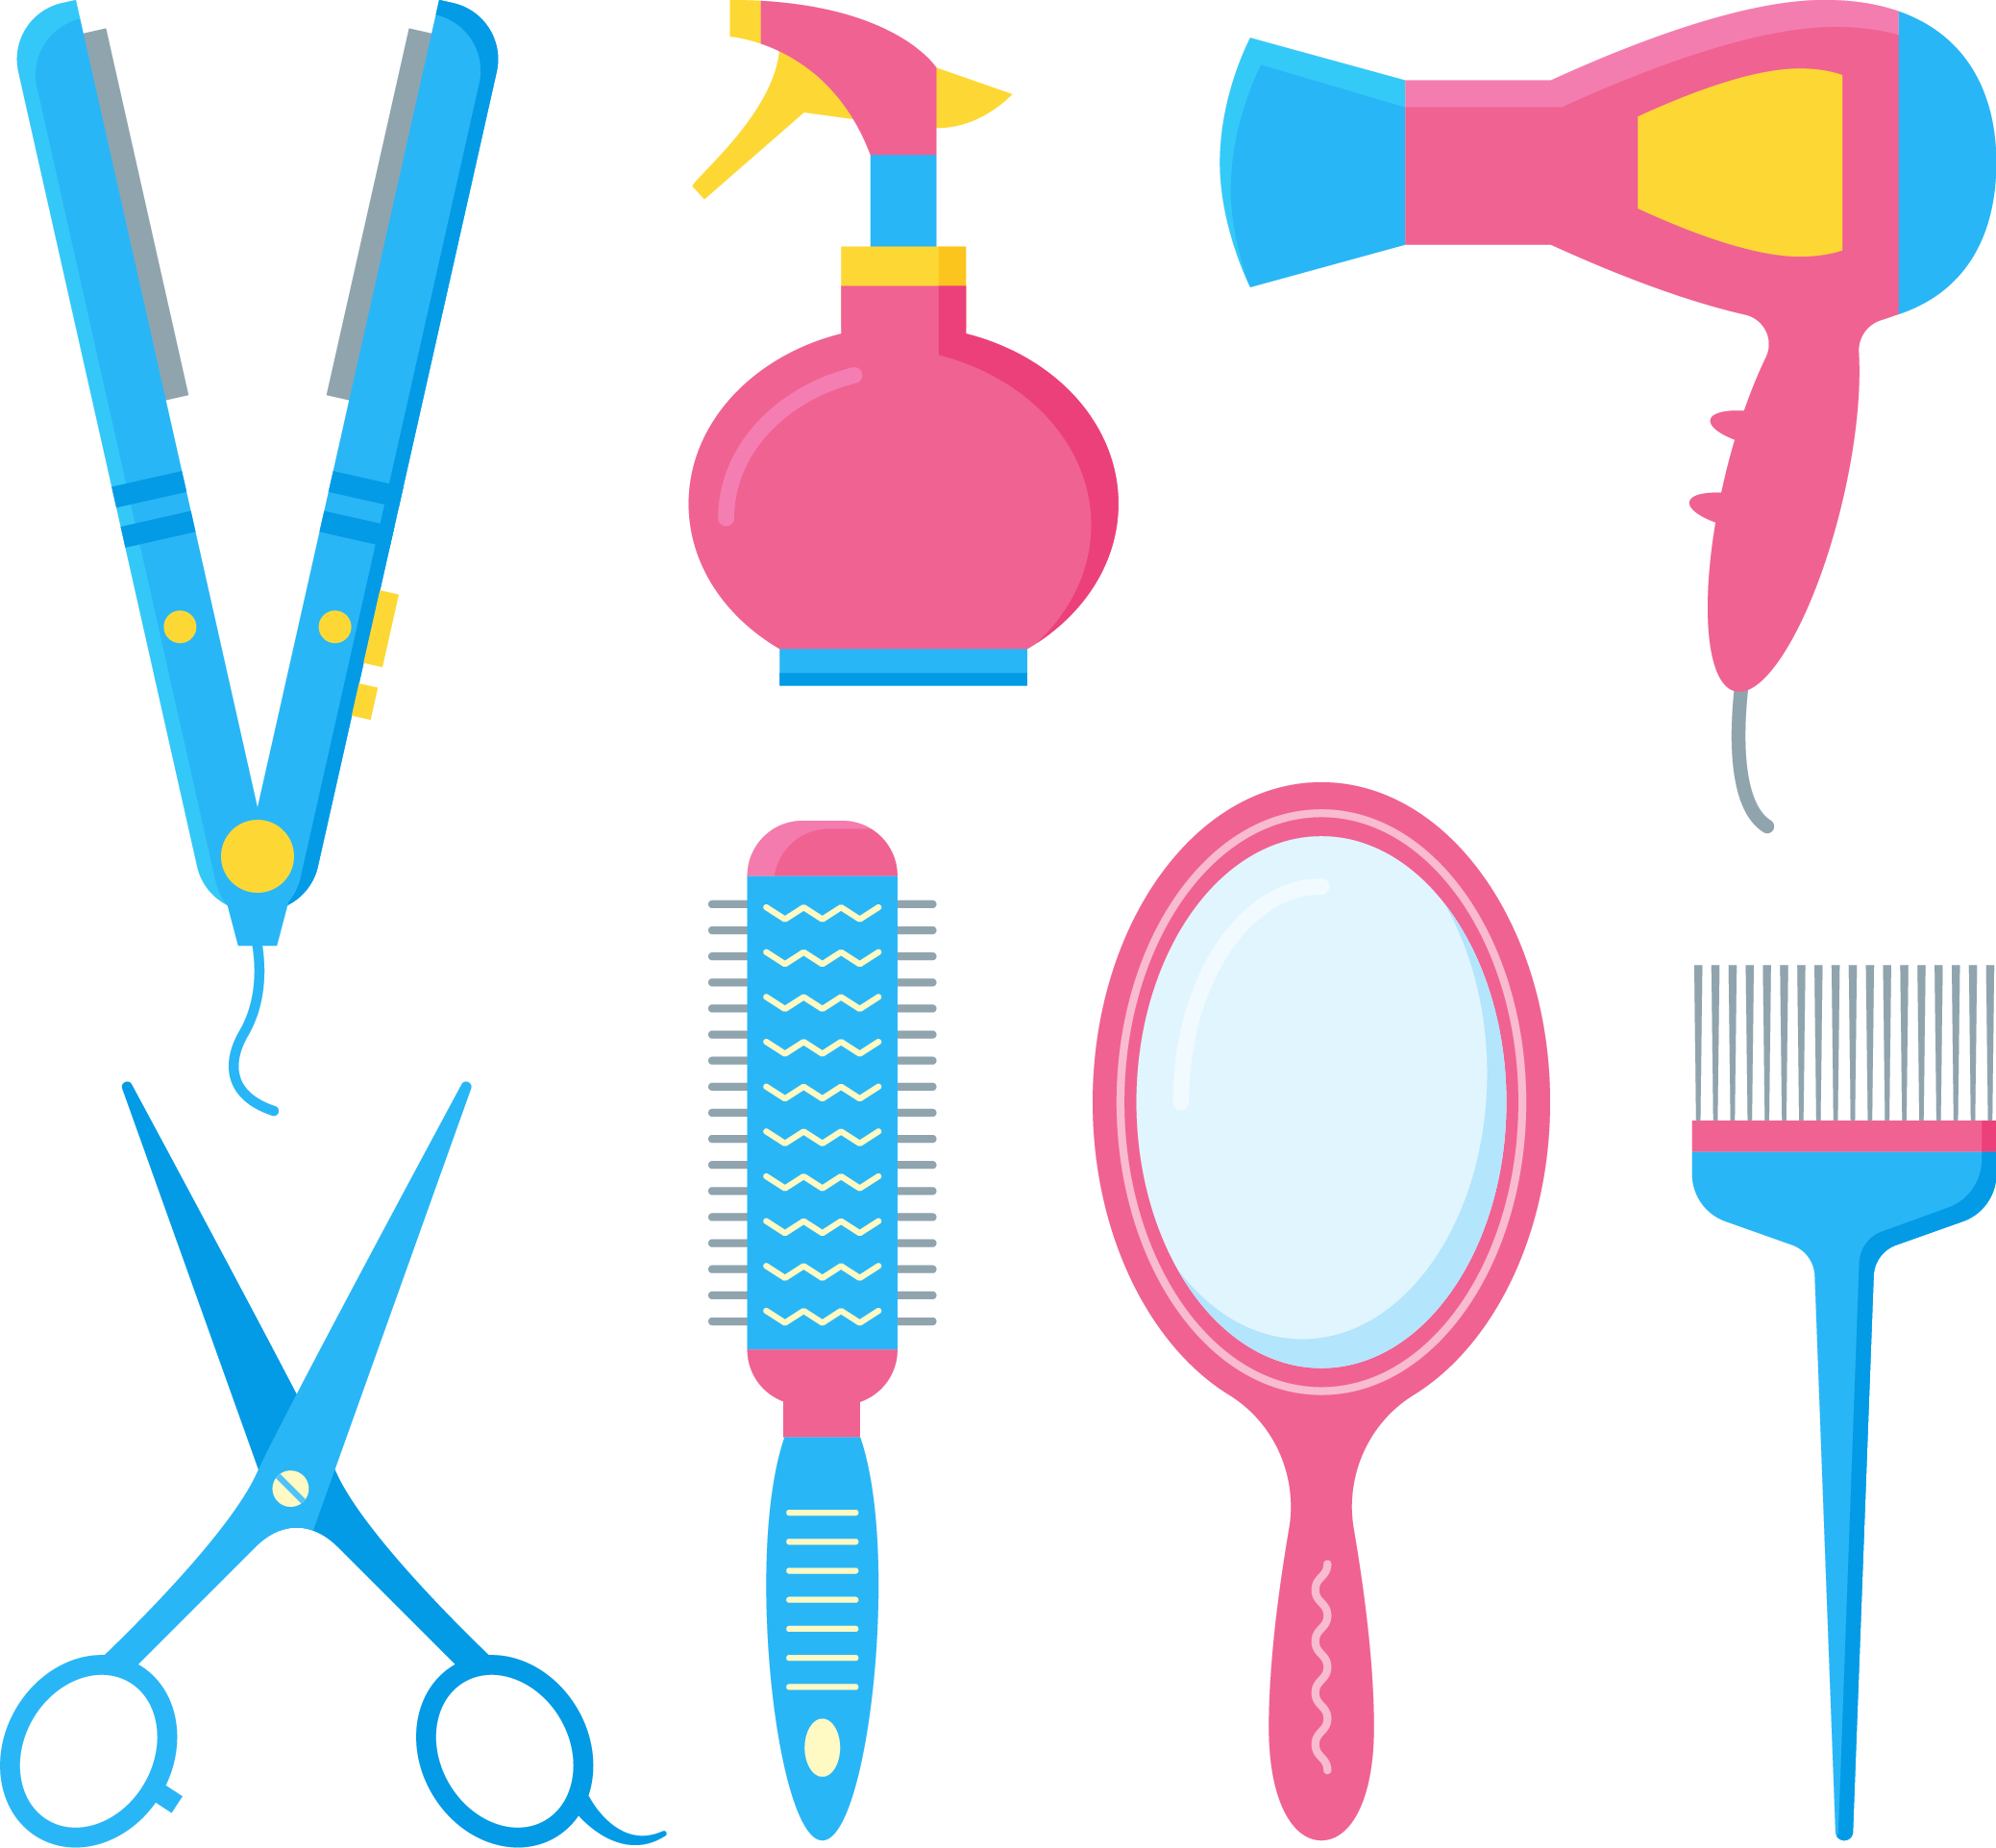 Comb Hairdresser Barbershop Hair Dryer Hairbrush - Imagenes De Peluqueria Para Imprimir, Hd Png Download